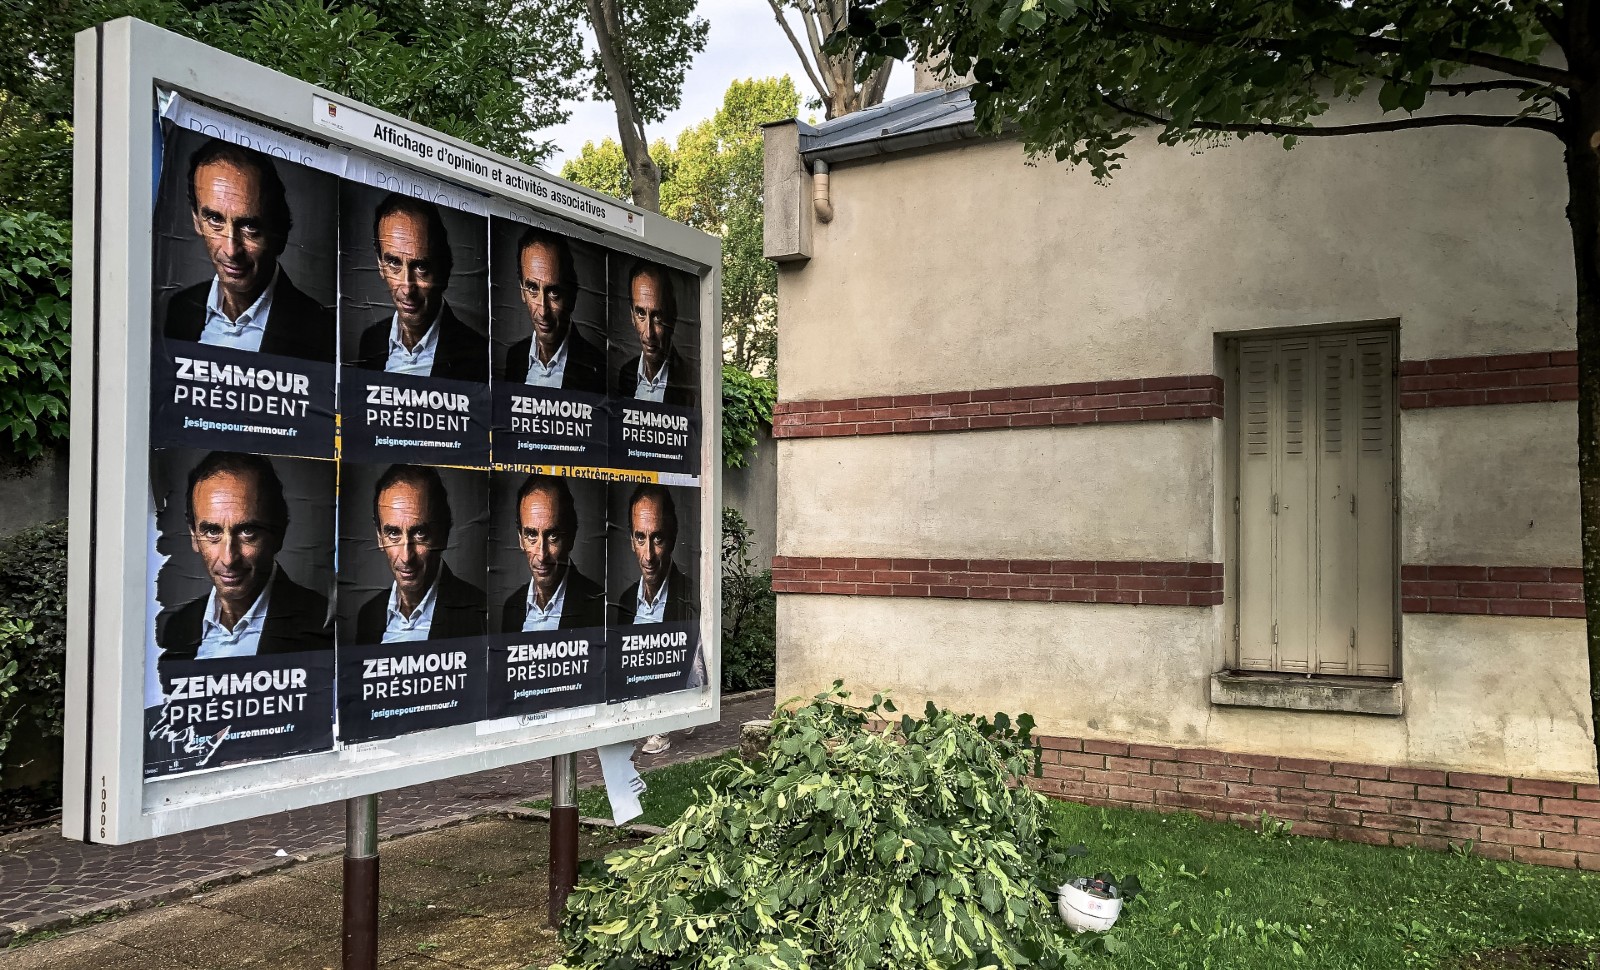 Zemmour candidat “sous-marin” pro-Macron, ce complotisme autorisé…